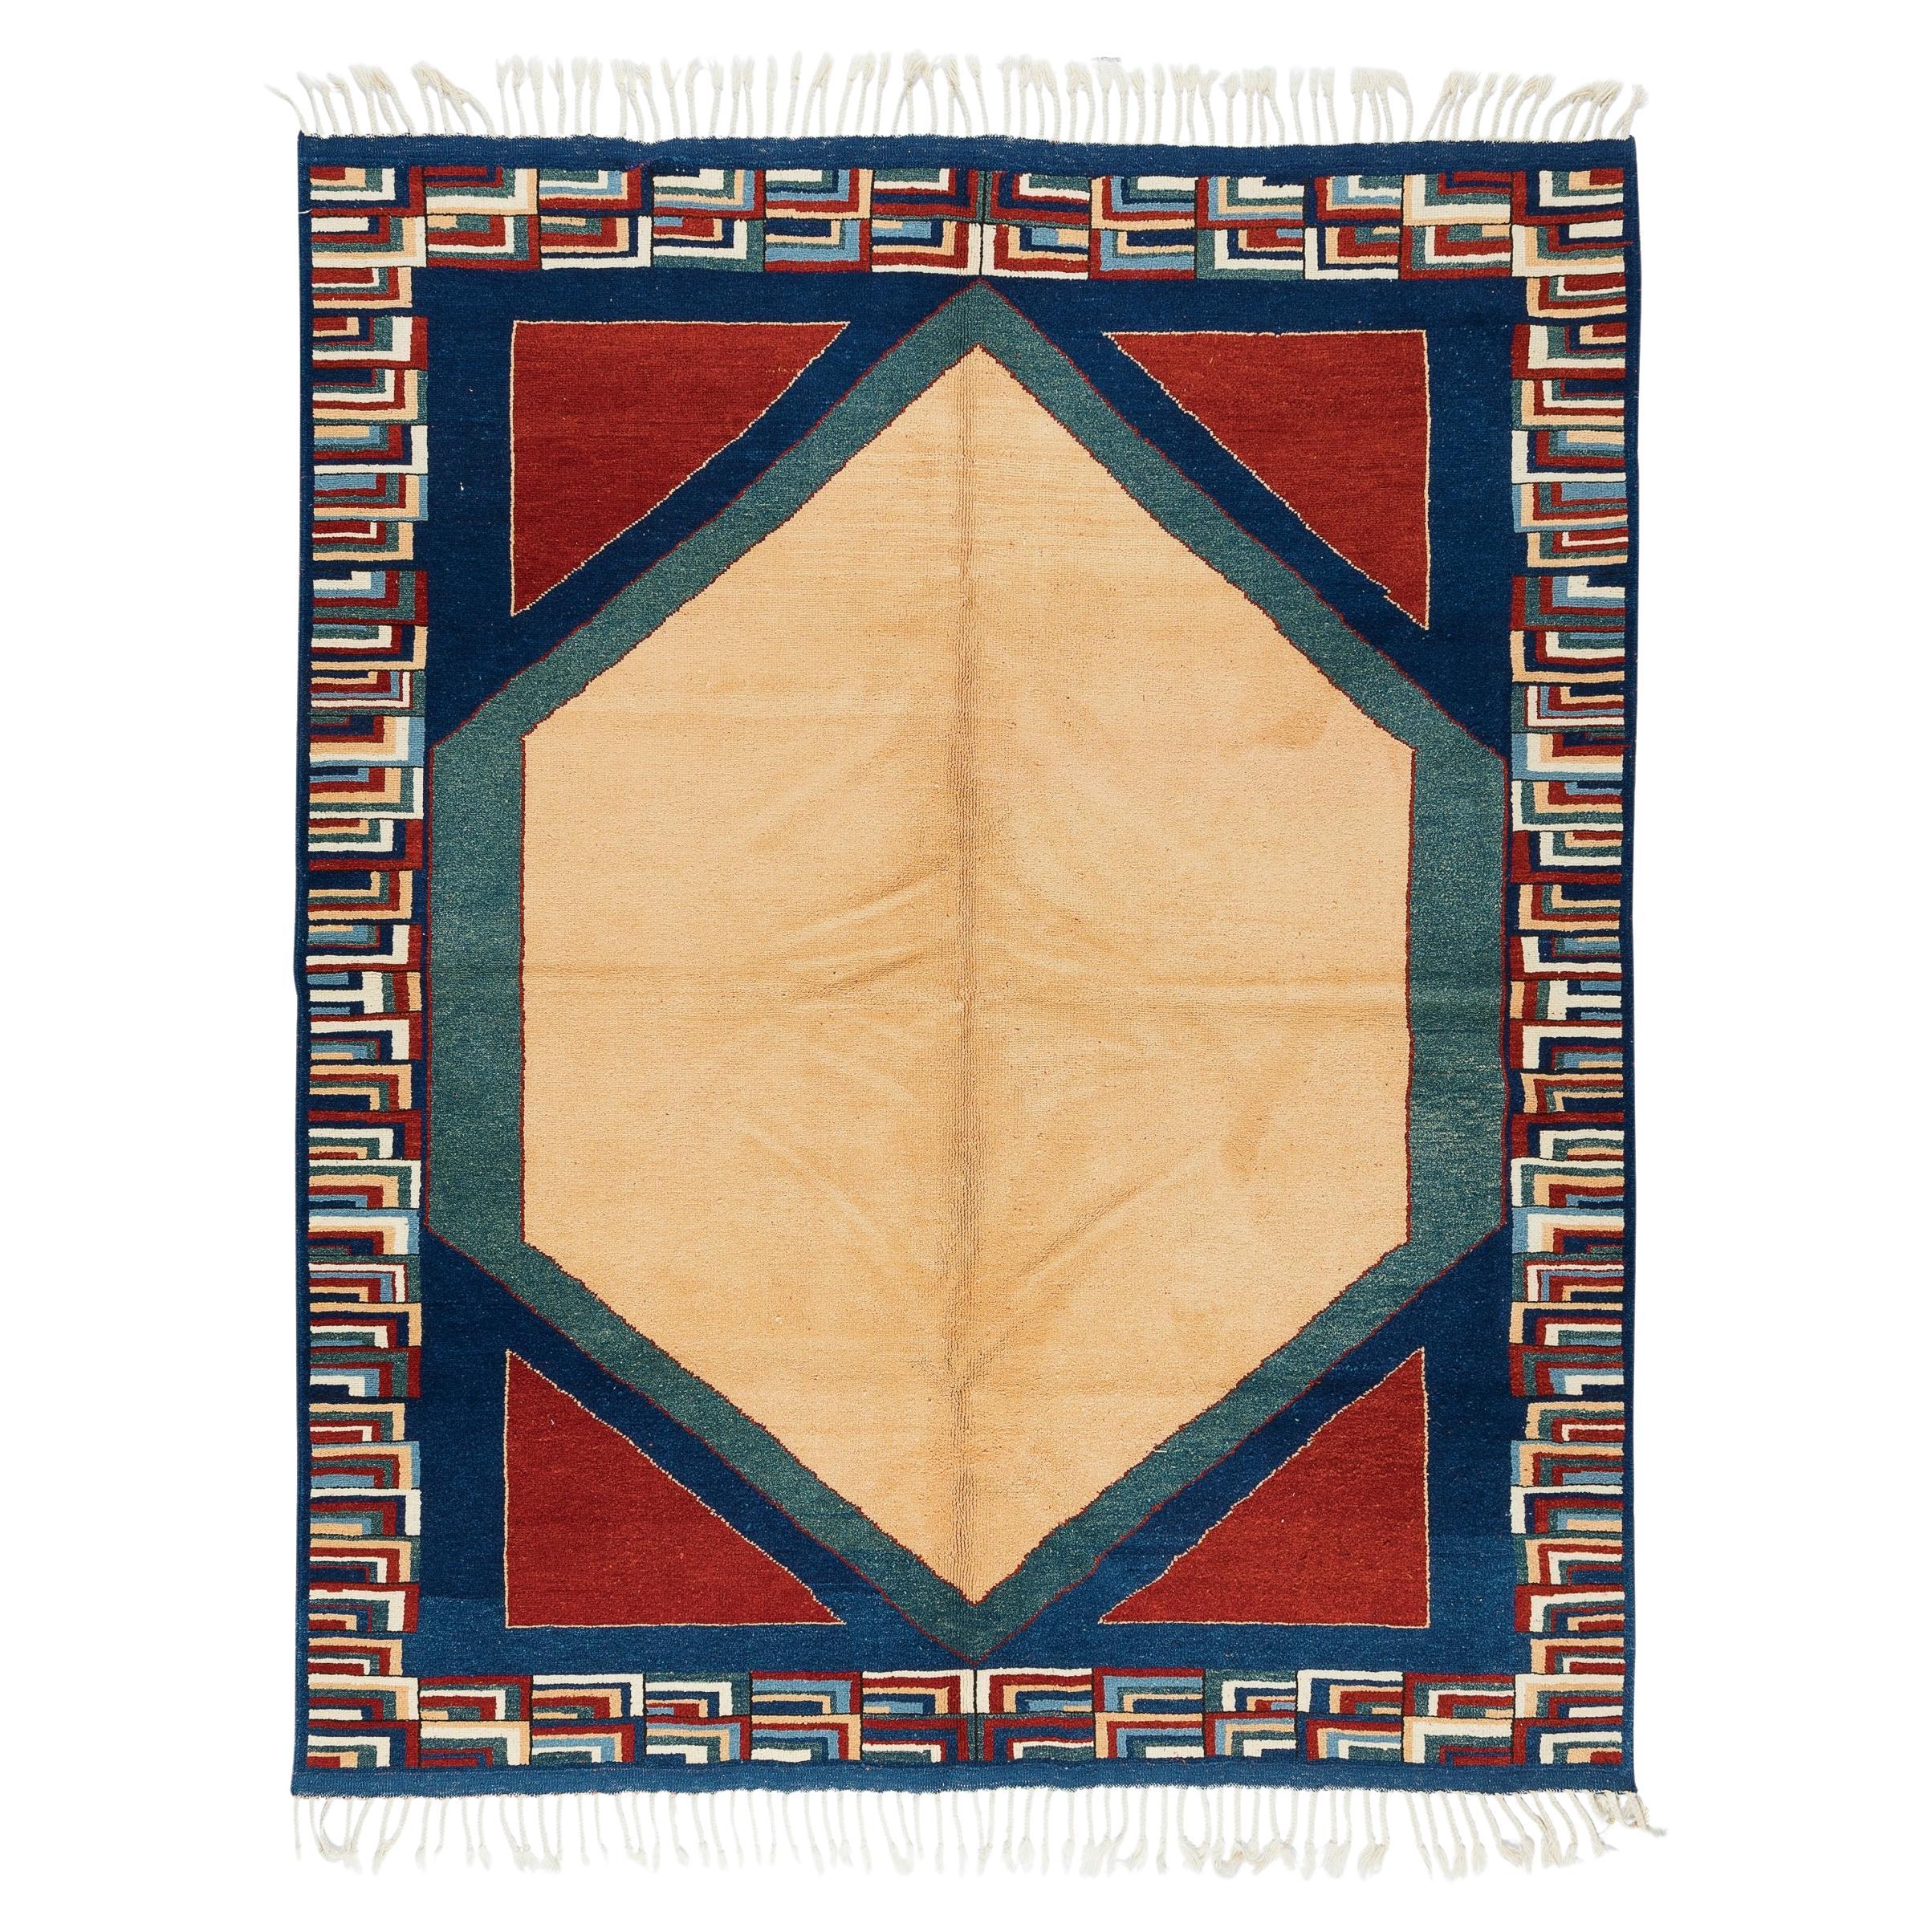 6.2x7.2 Ft Contemporary Türkischer Teppich. 100% Wolle, Natürliche Farbstoffe, Modern Carpet